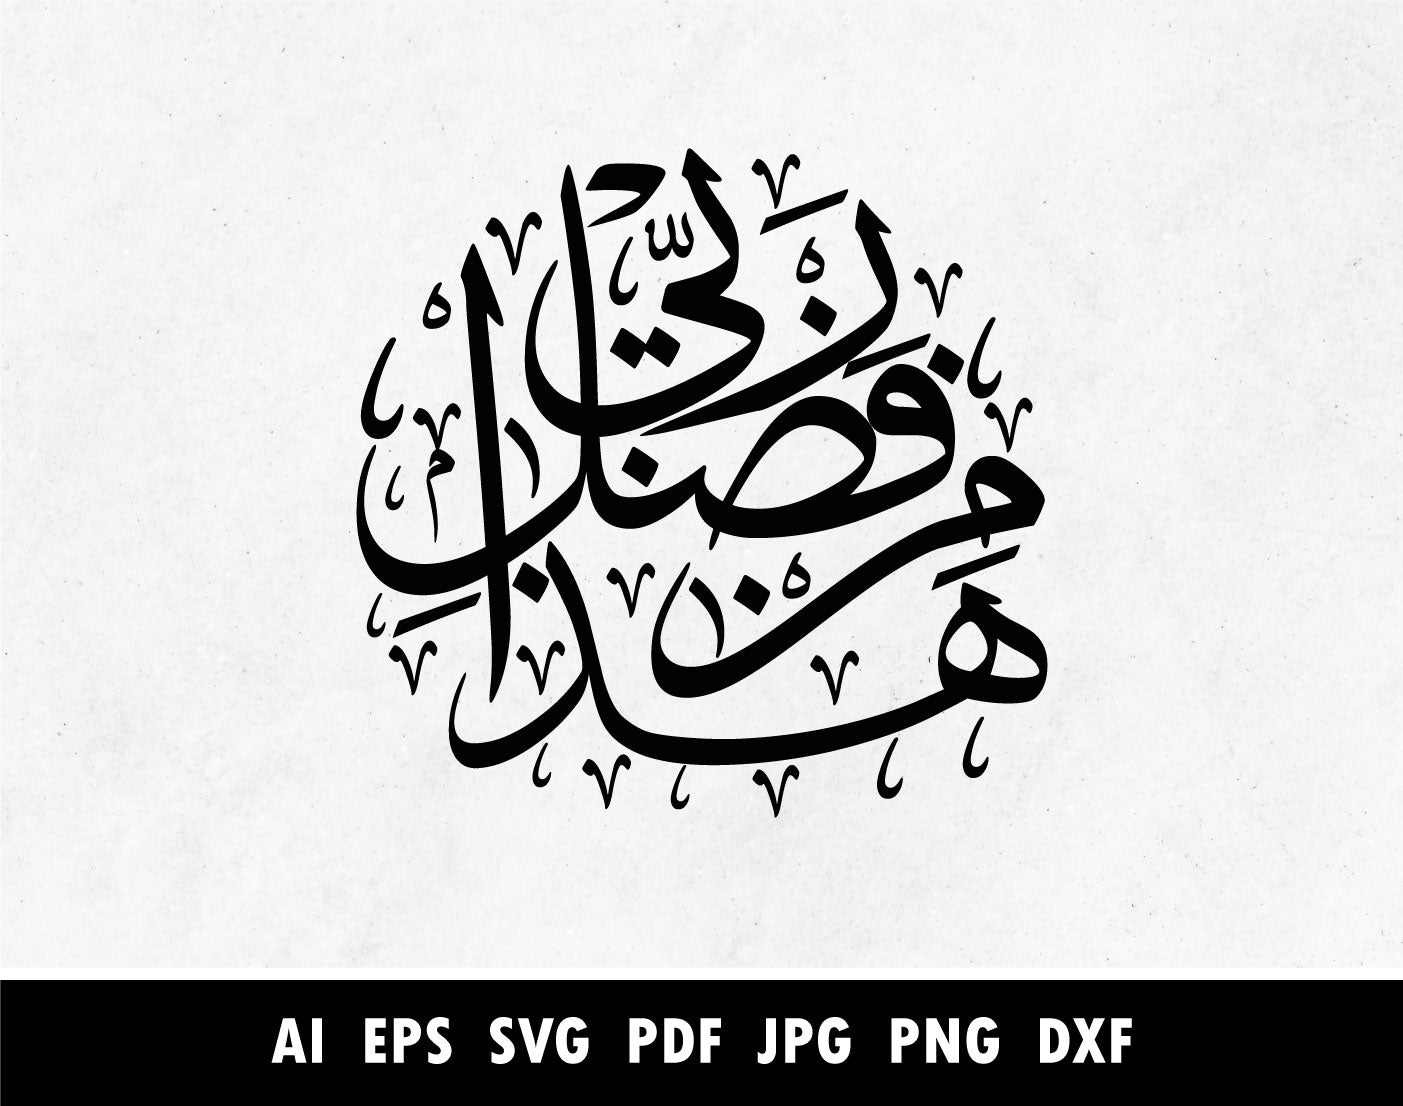 هذا من فضل ربي Arabic calligraphy SVG for Stencils making